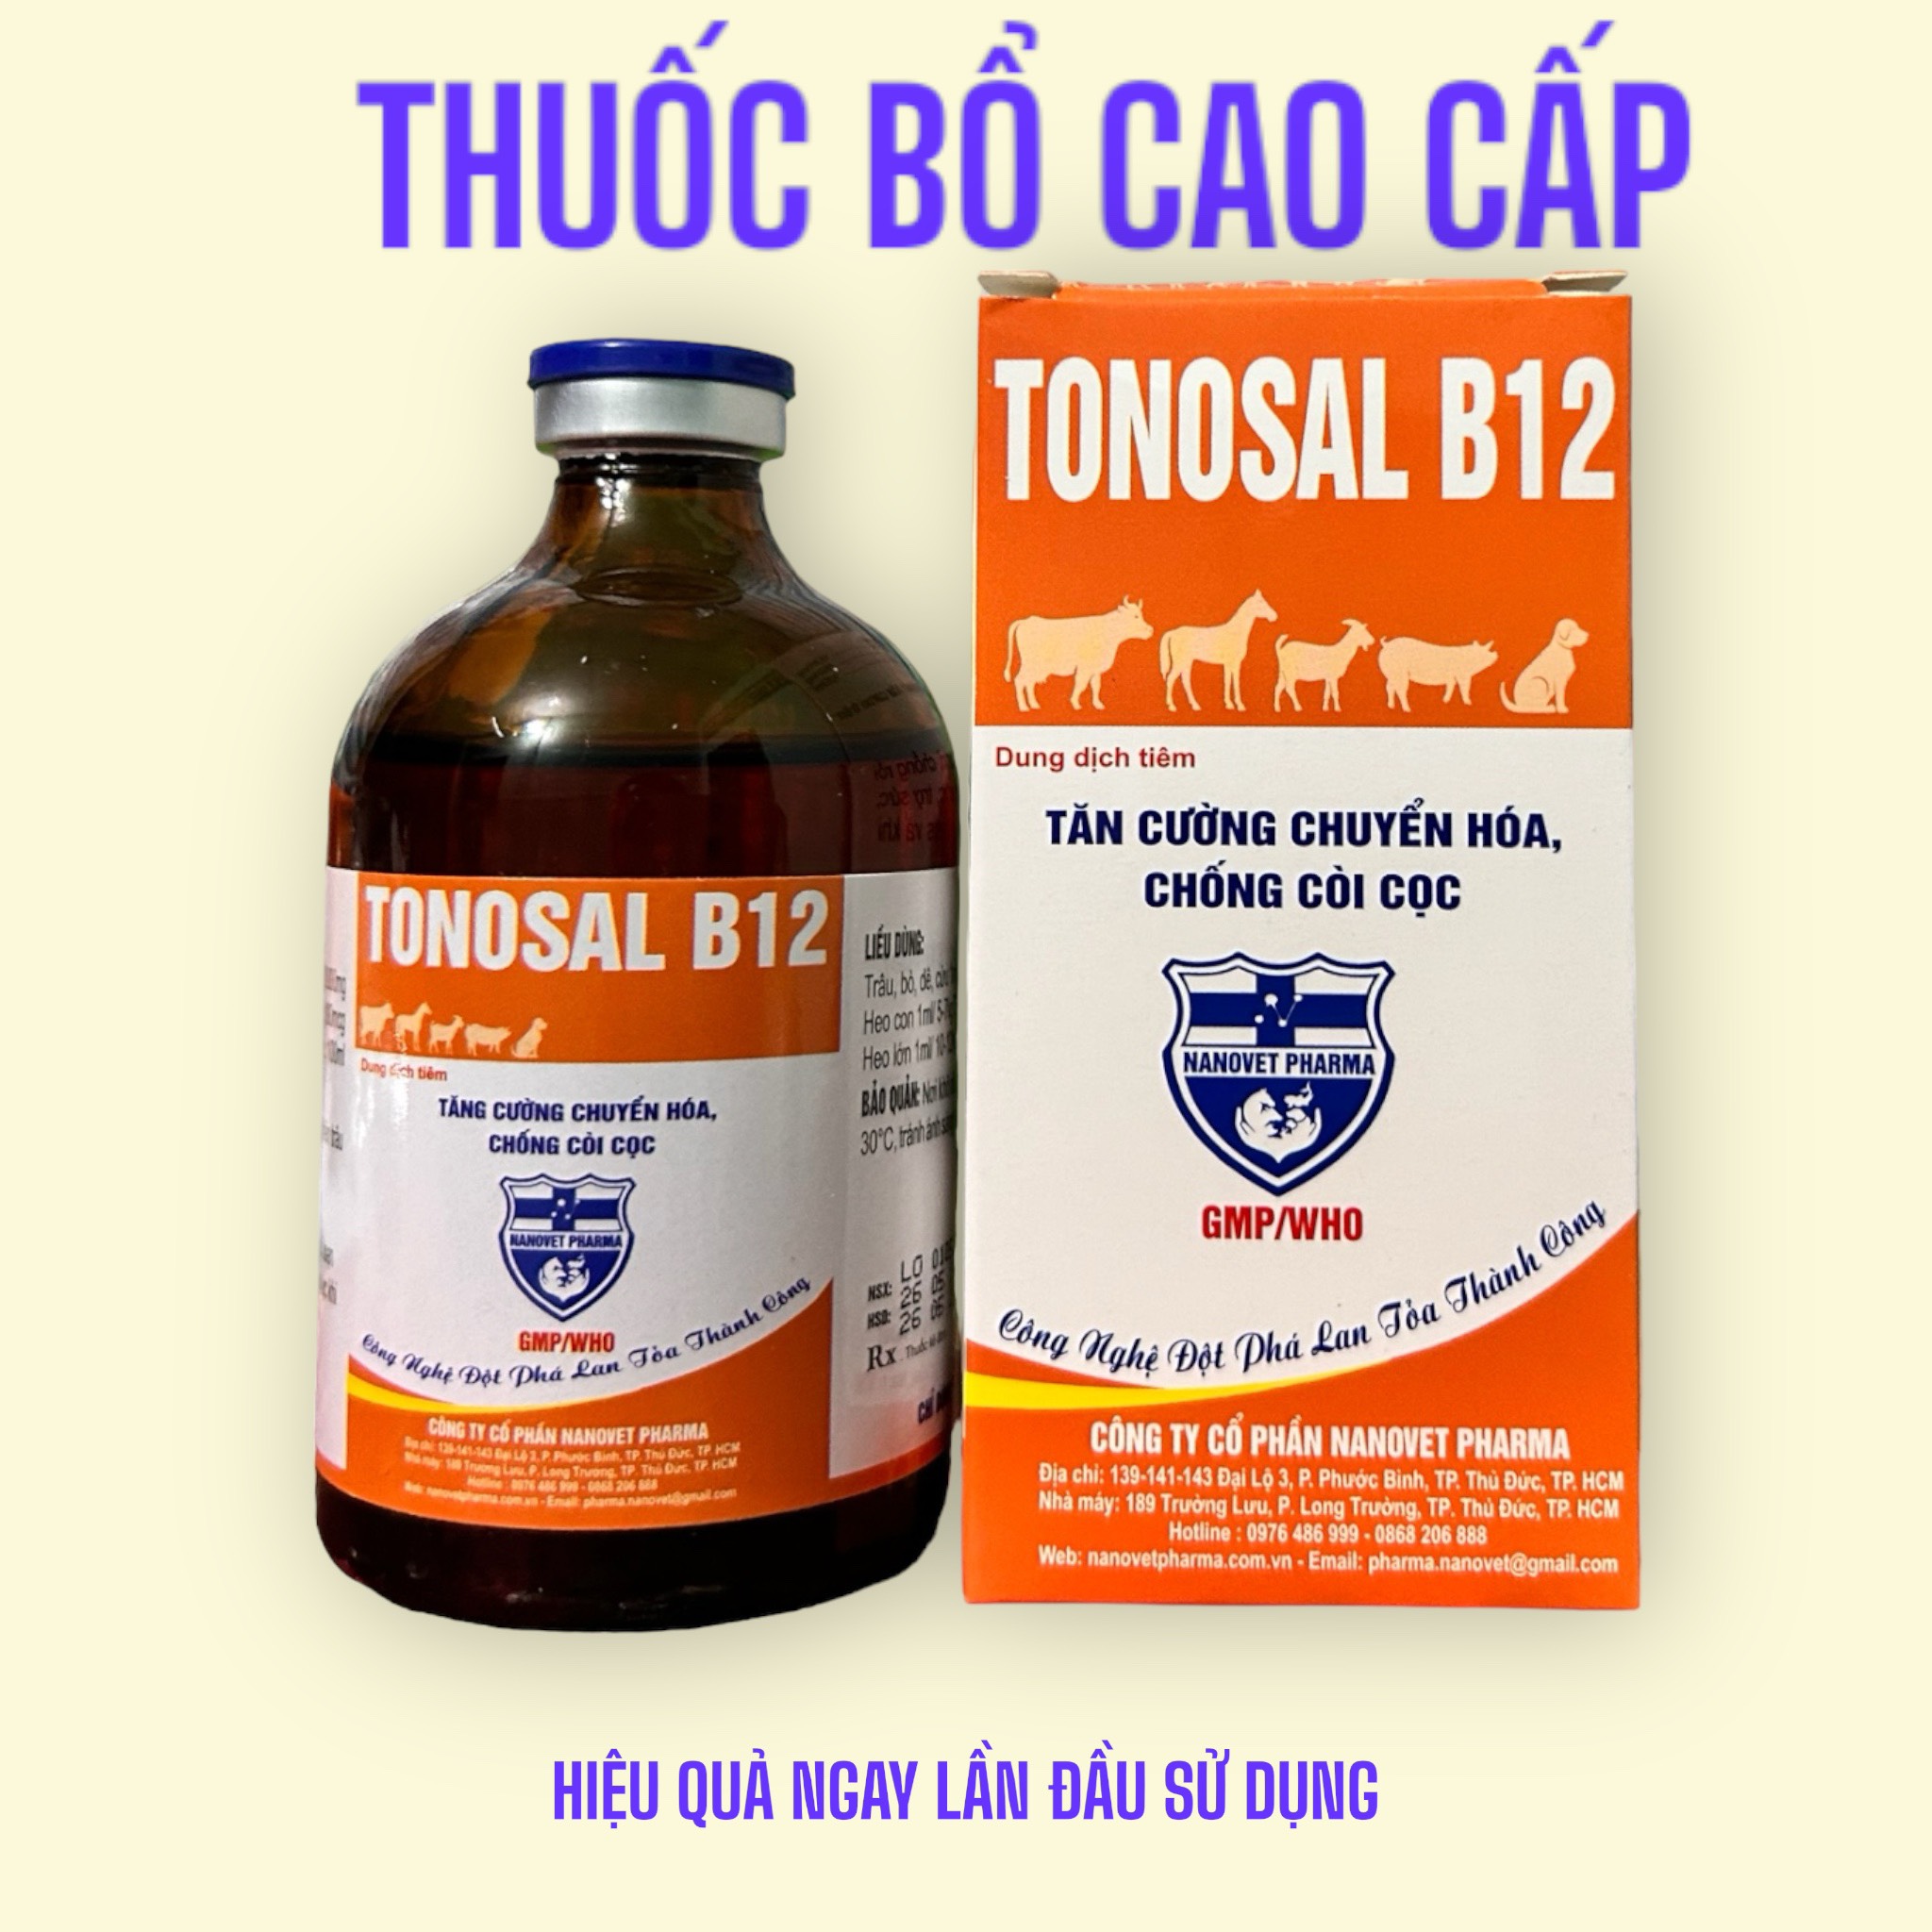 1 chai 100ml TONOSAL B12 cung cấp vitamin b12, Butafosphan giúp heo, bò, gà, vịt chống còi cọc, tăng trọng nhanh